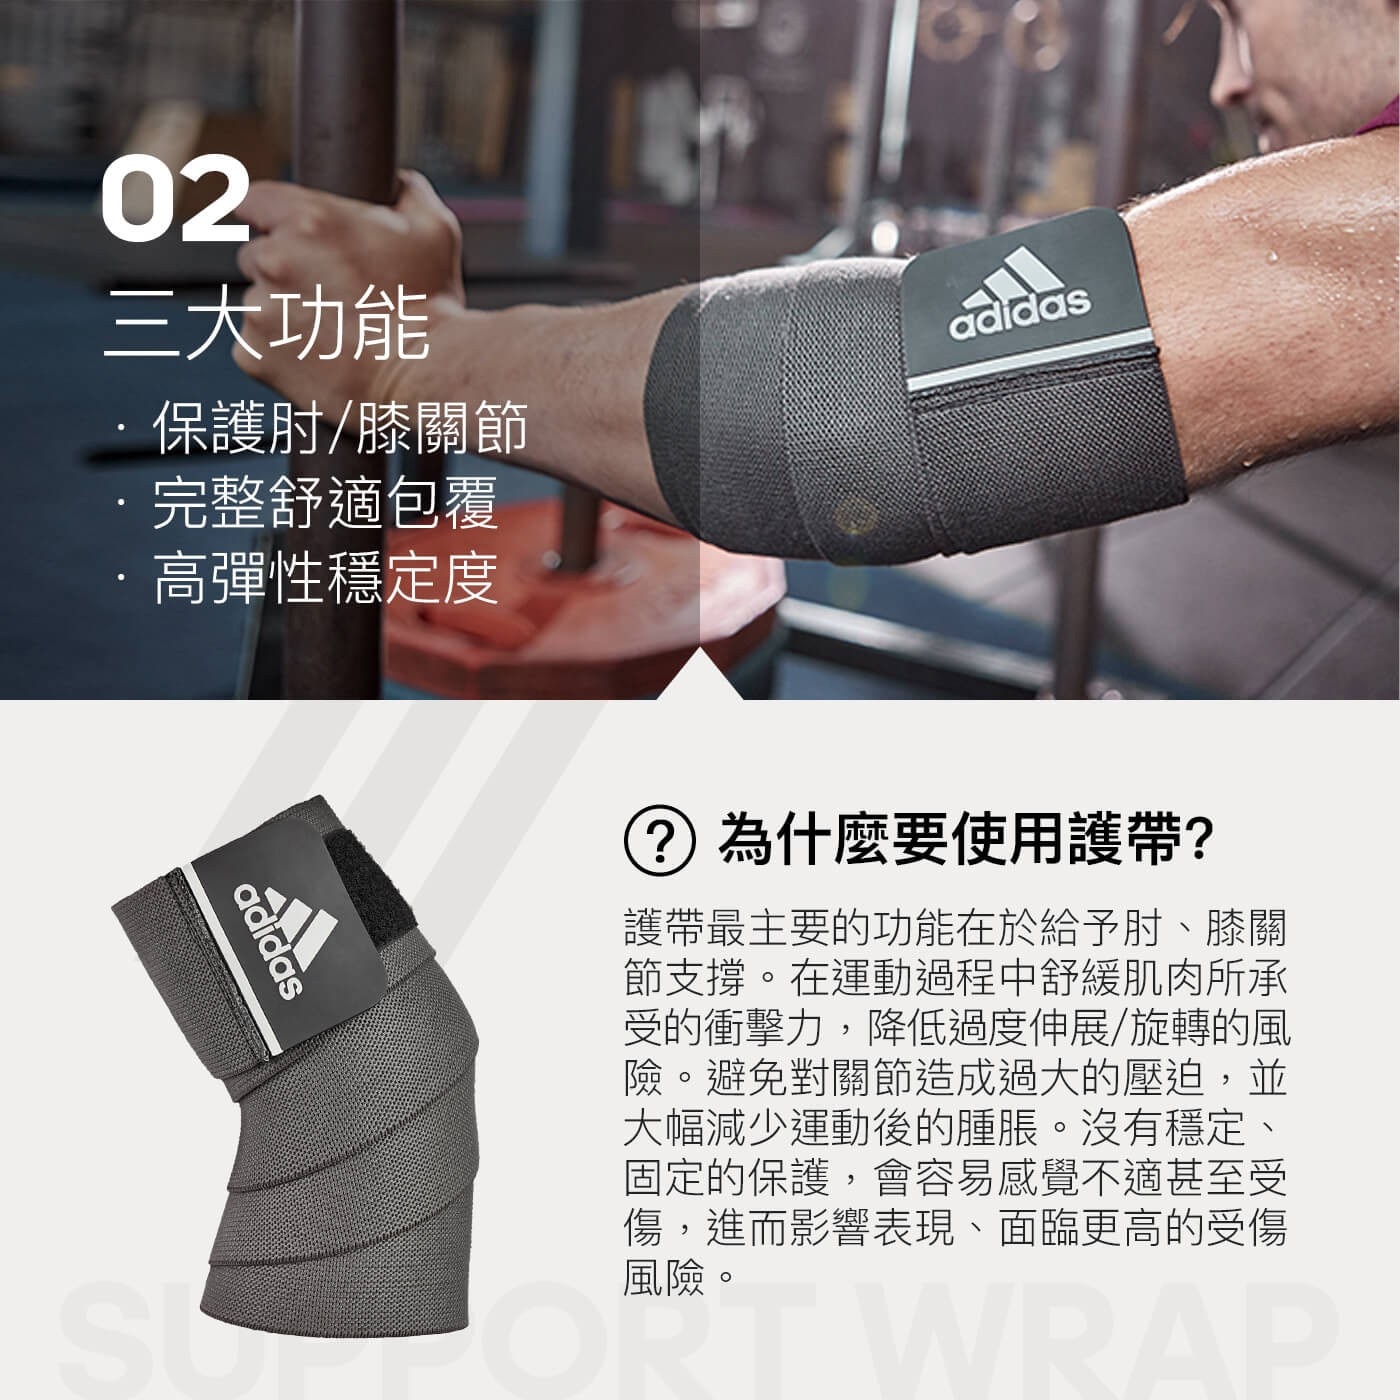 Adidas 彈力纏繞式訓練護帶保護肘膝關節完整舒適包覆高彈性穩定度